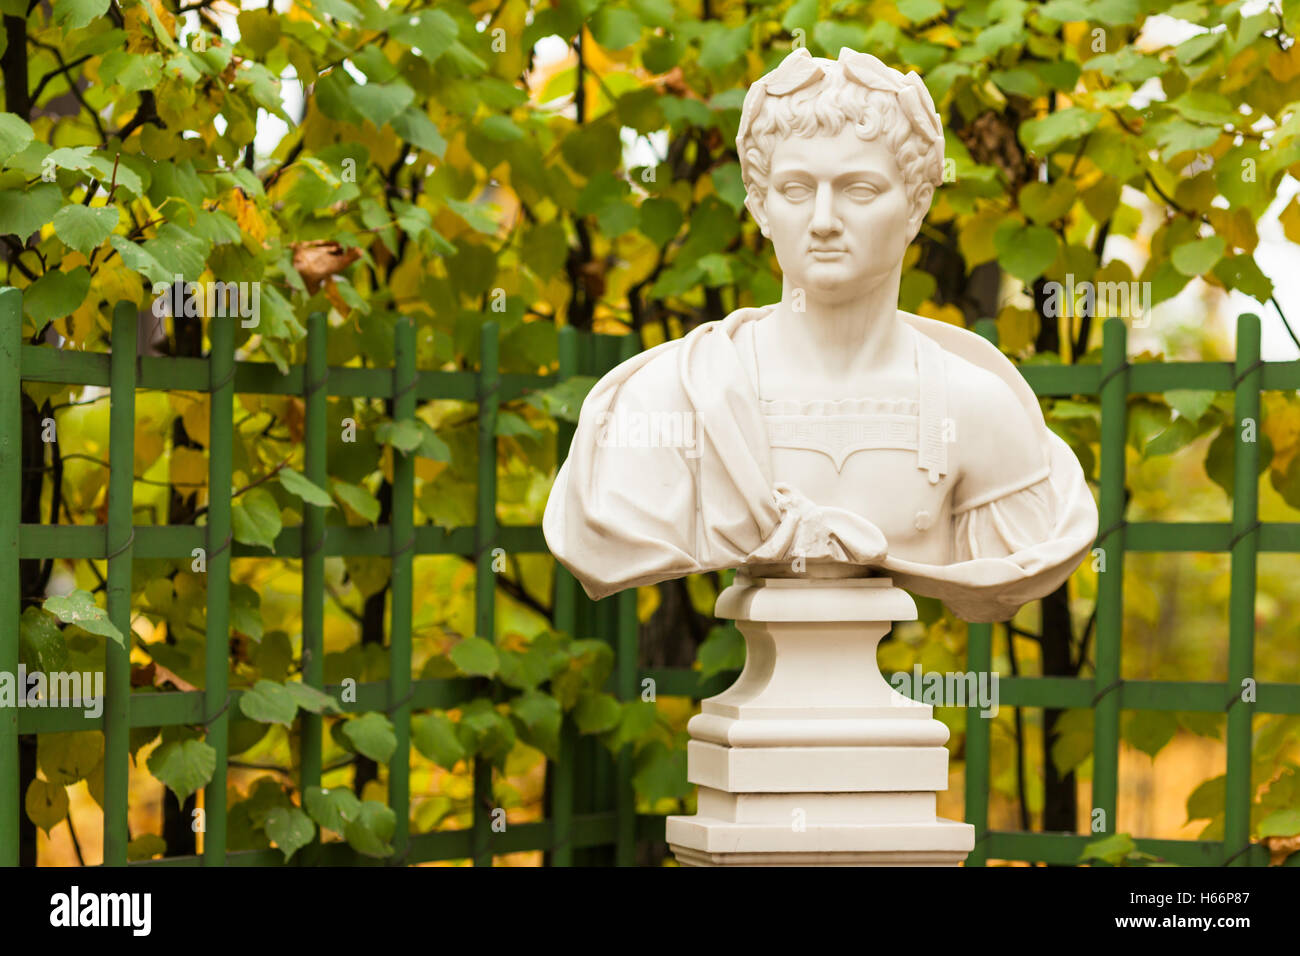 Sculptural bust of the Roman emperor Vespasian in the Summer Garden, St. Petersburg Stock Photo